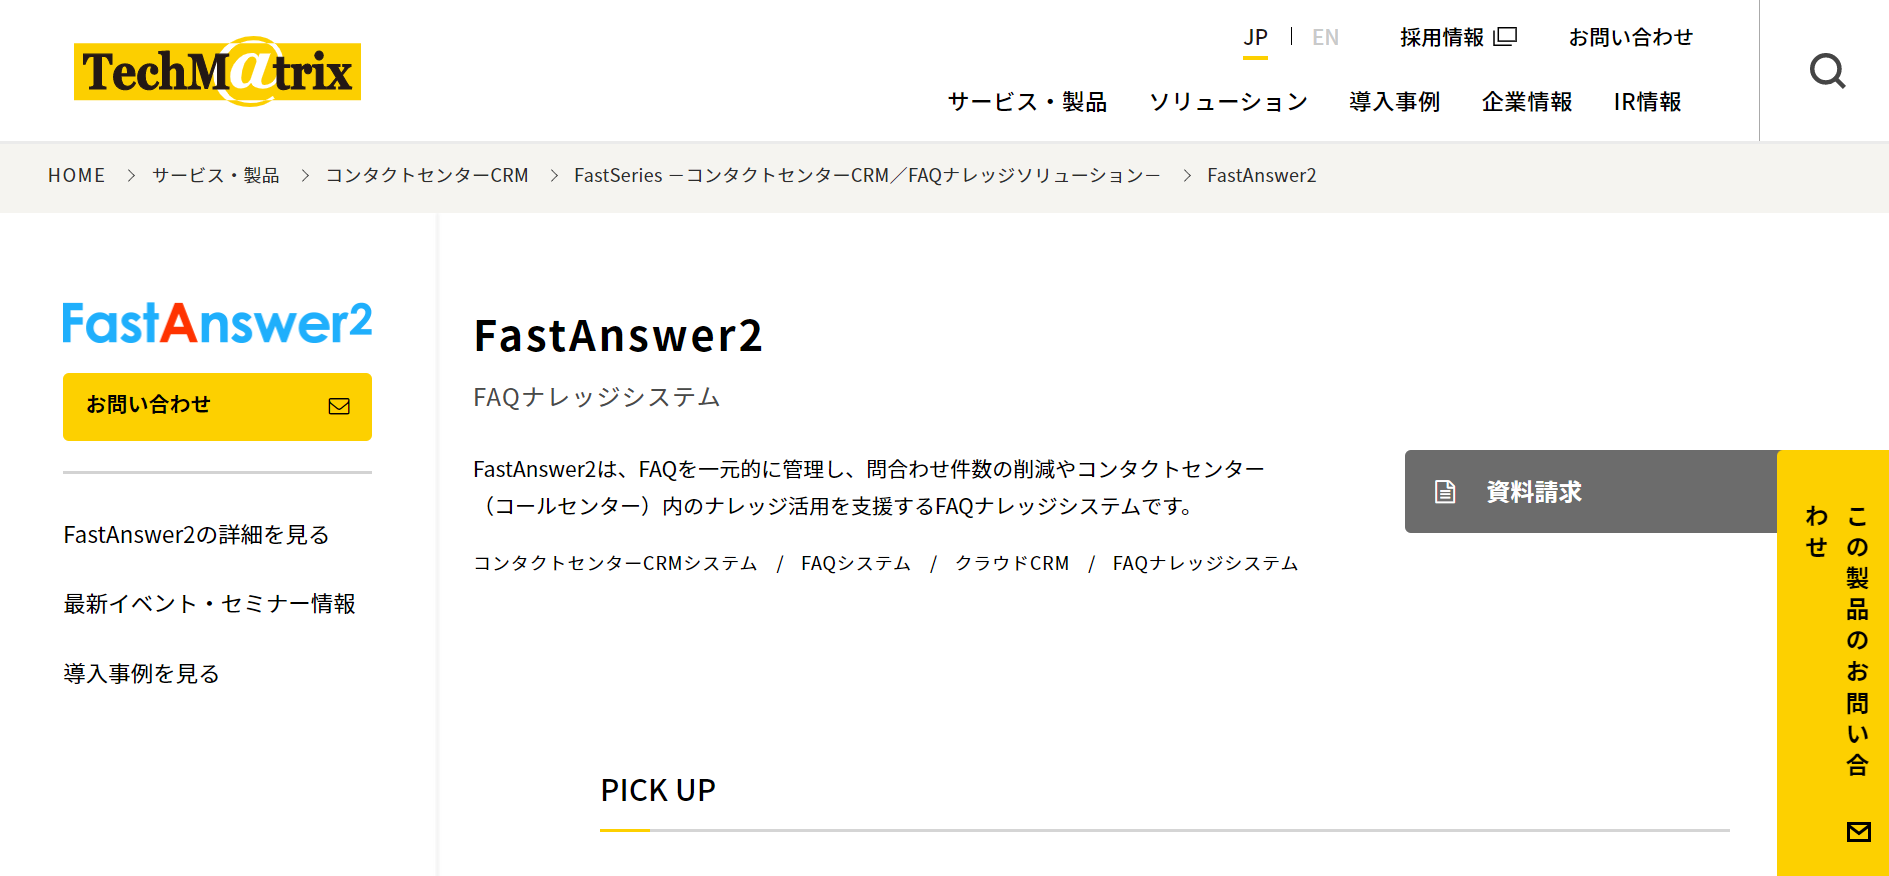 FastAnswer2のトップページ